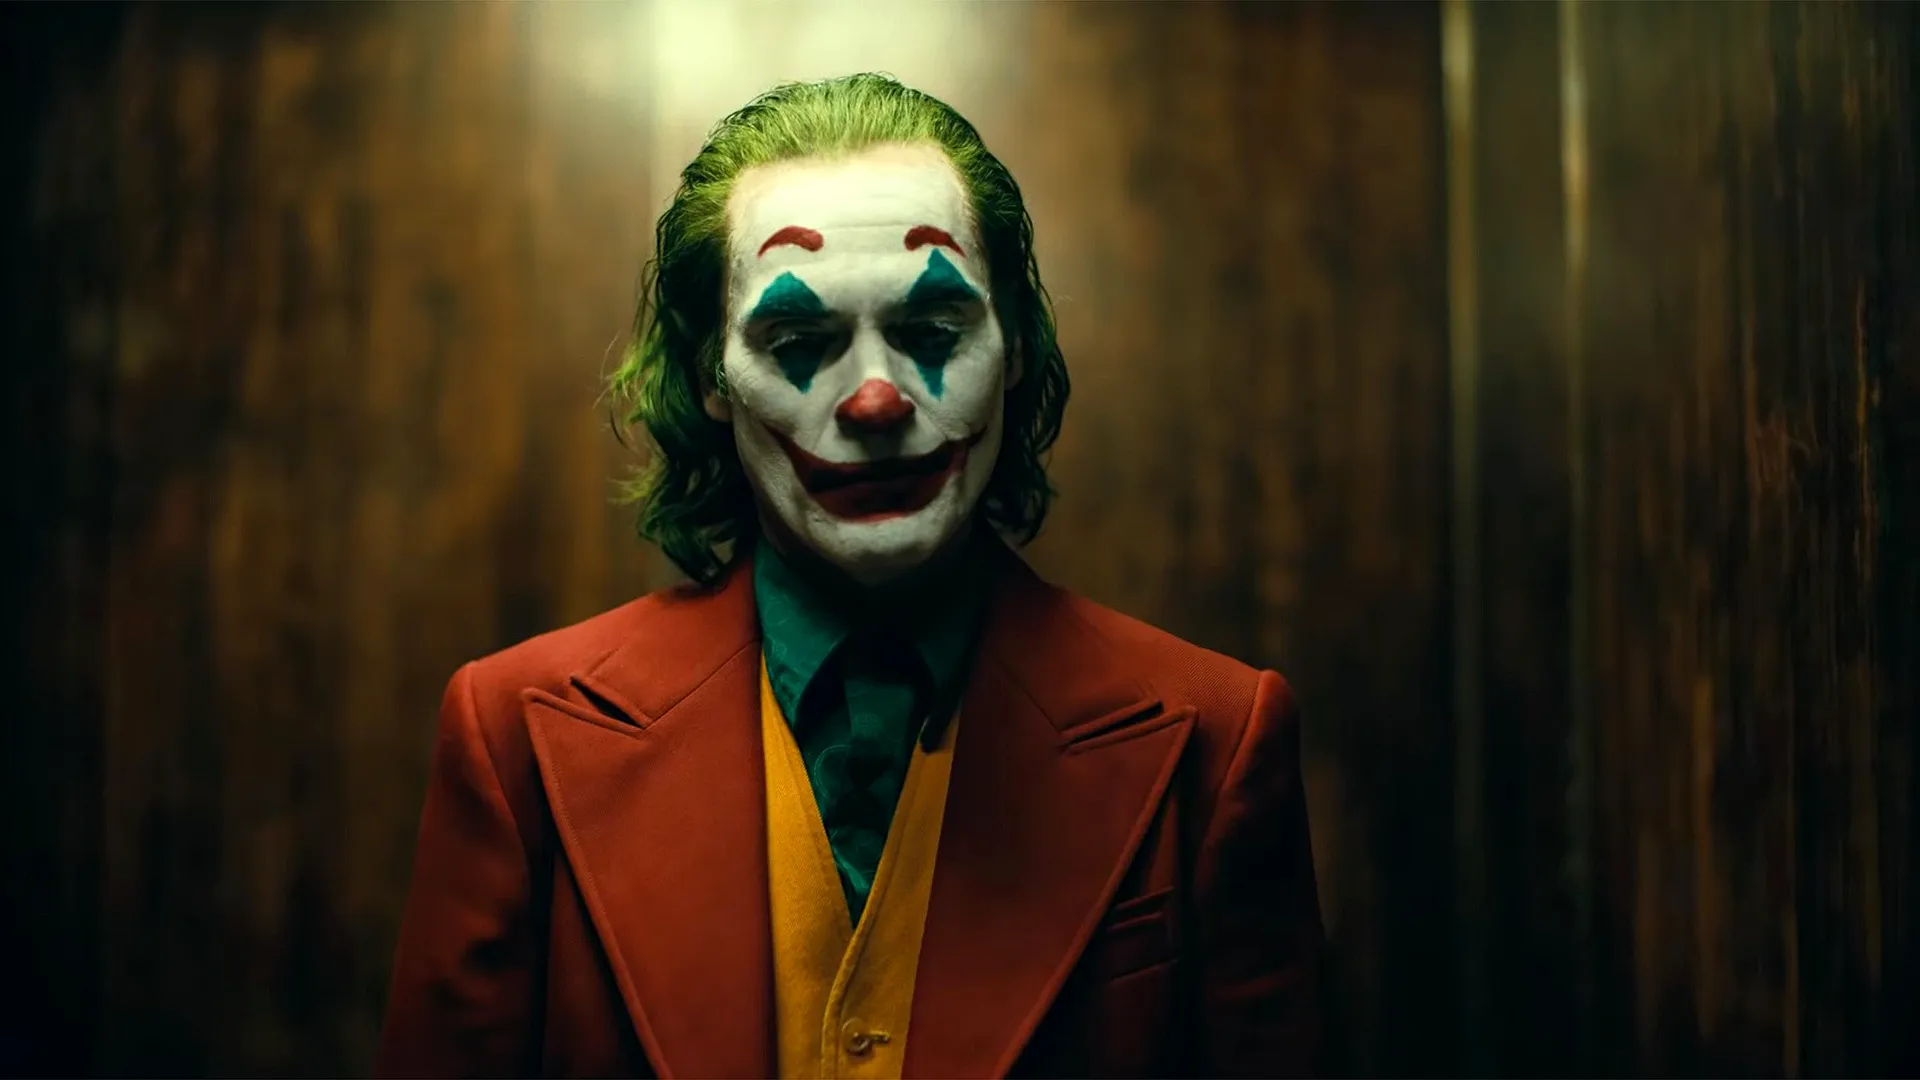 Joker 2019 Backgrounds